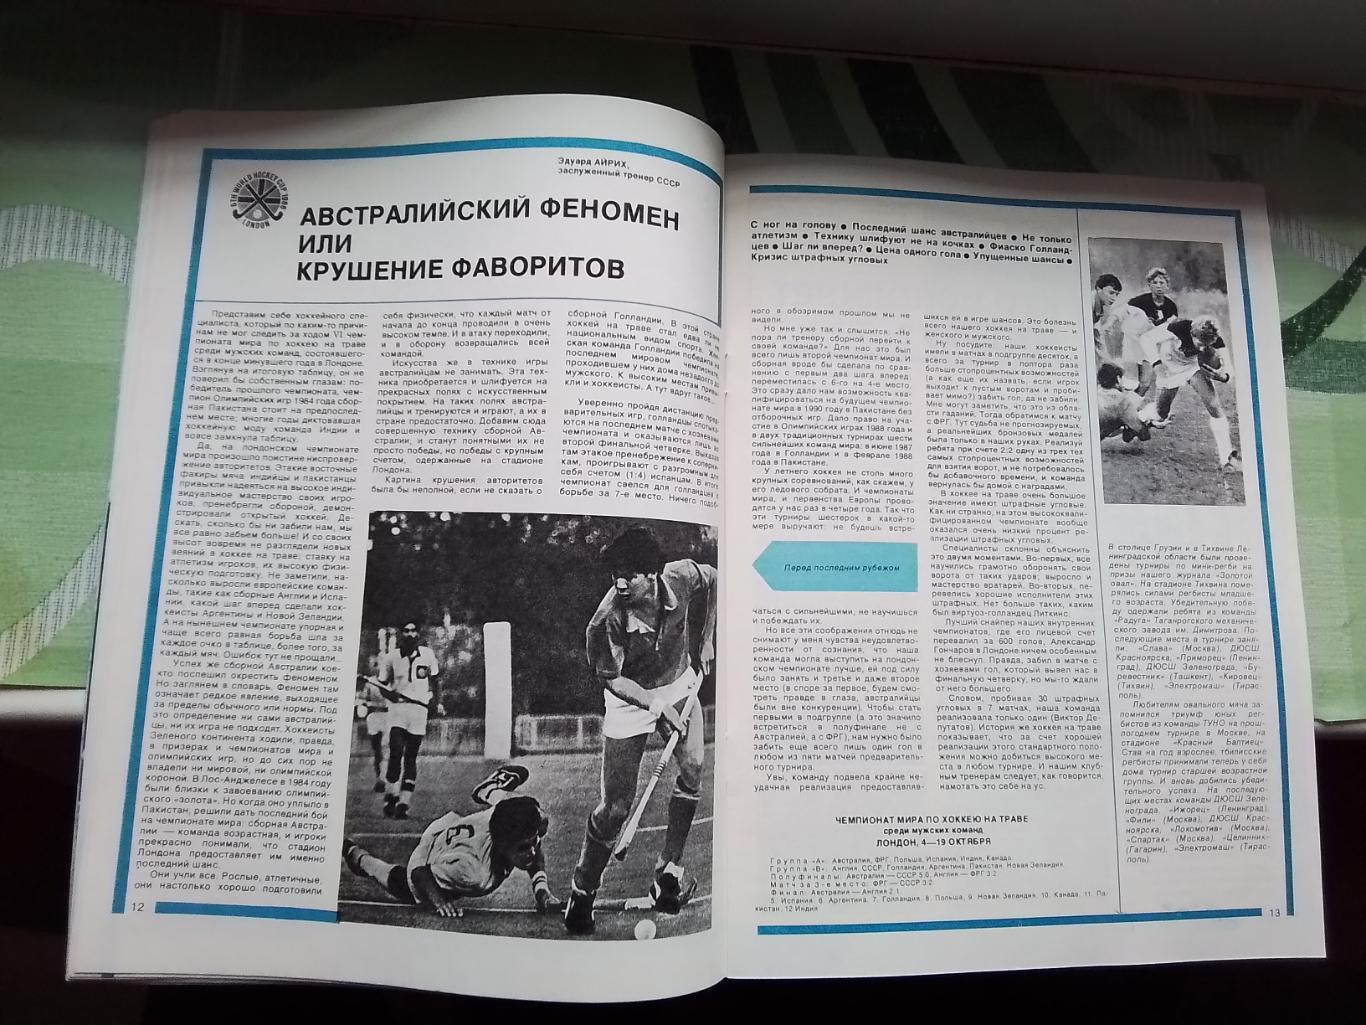 Журнал Спортивные игры 1987 1 Влад Высоцкий Франция на ЧМ-86 ВВА чемпион регби 7